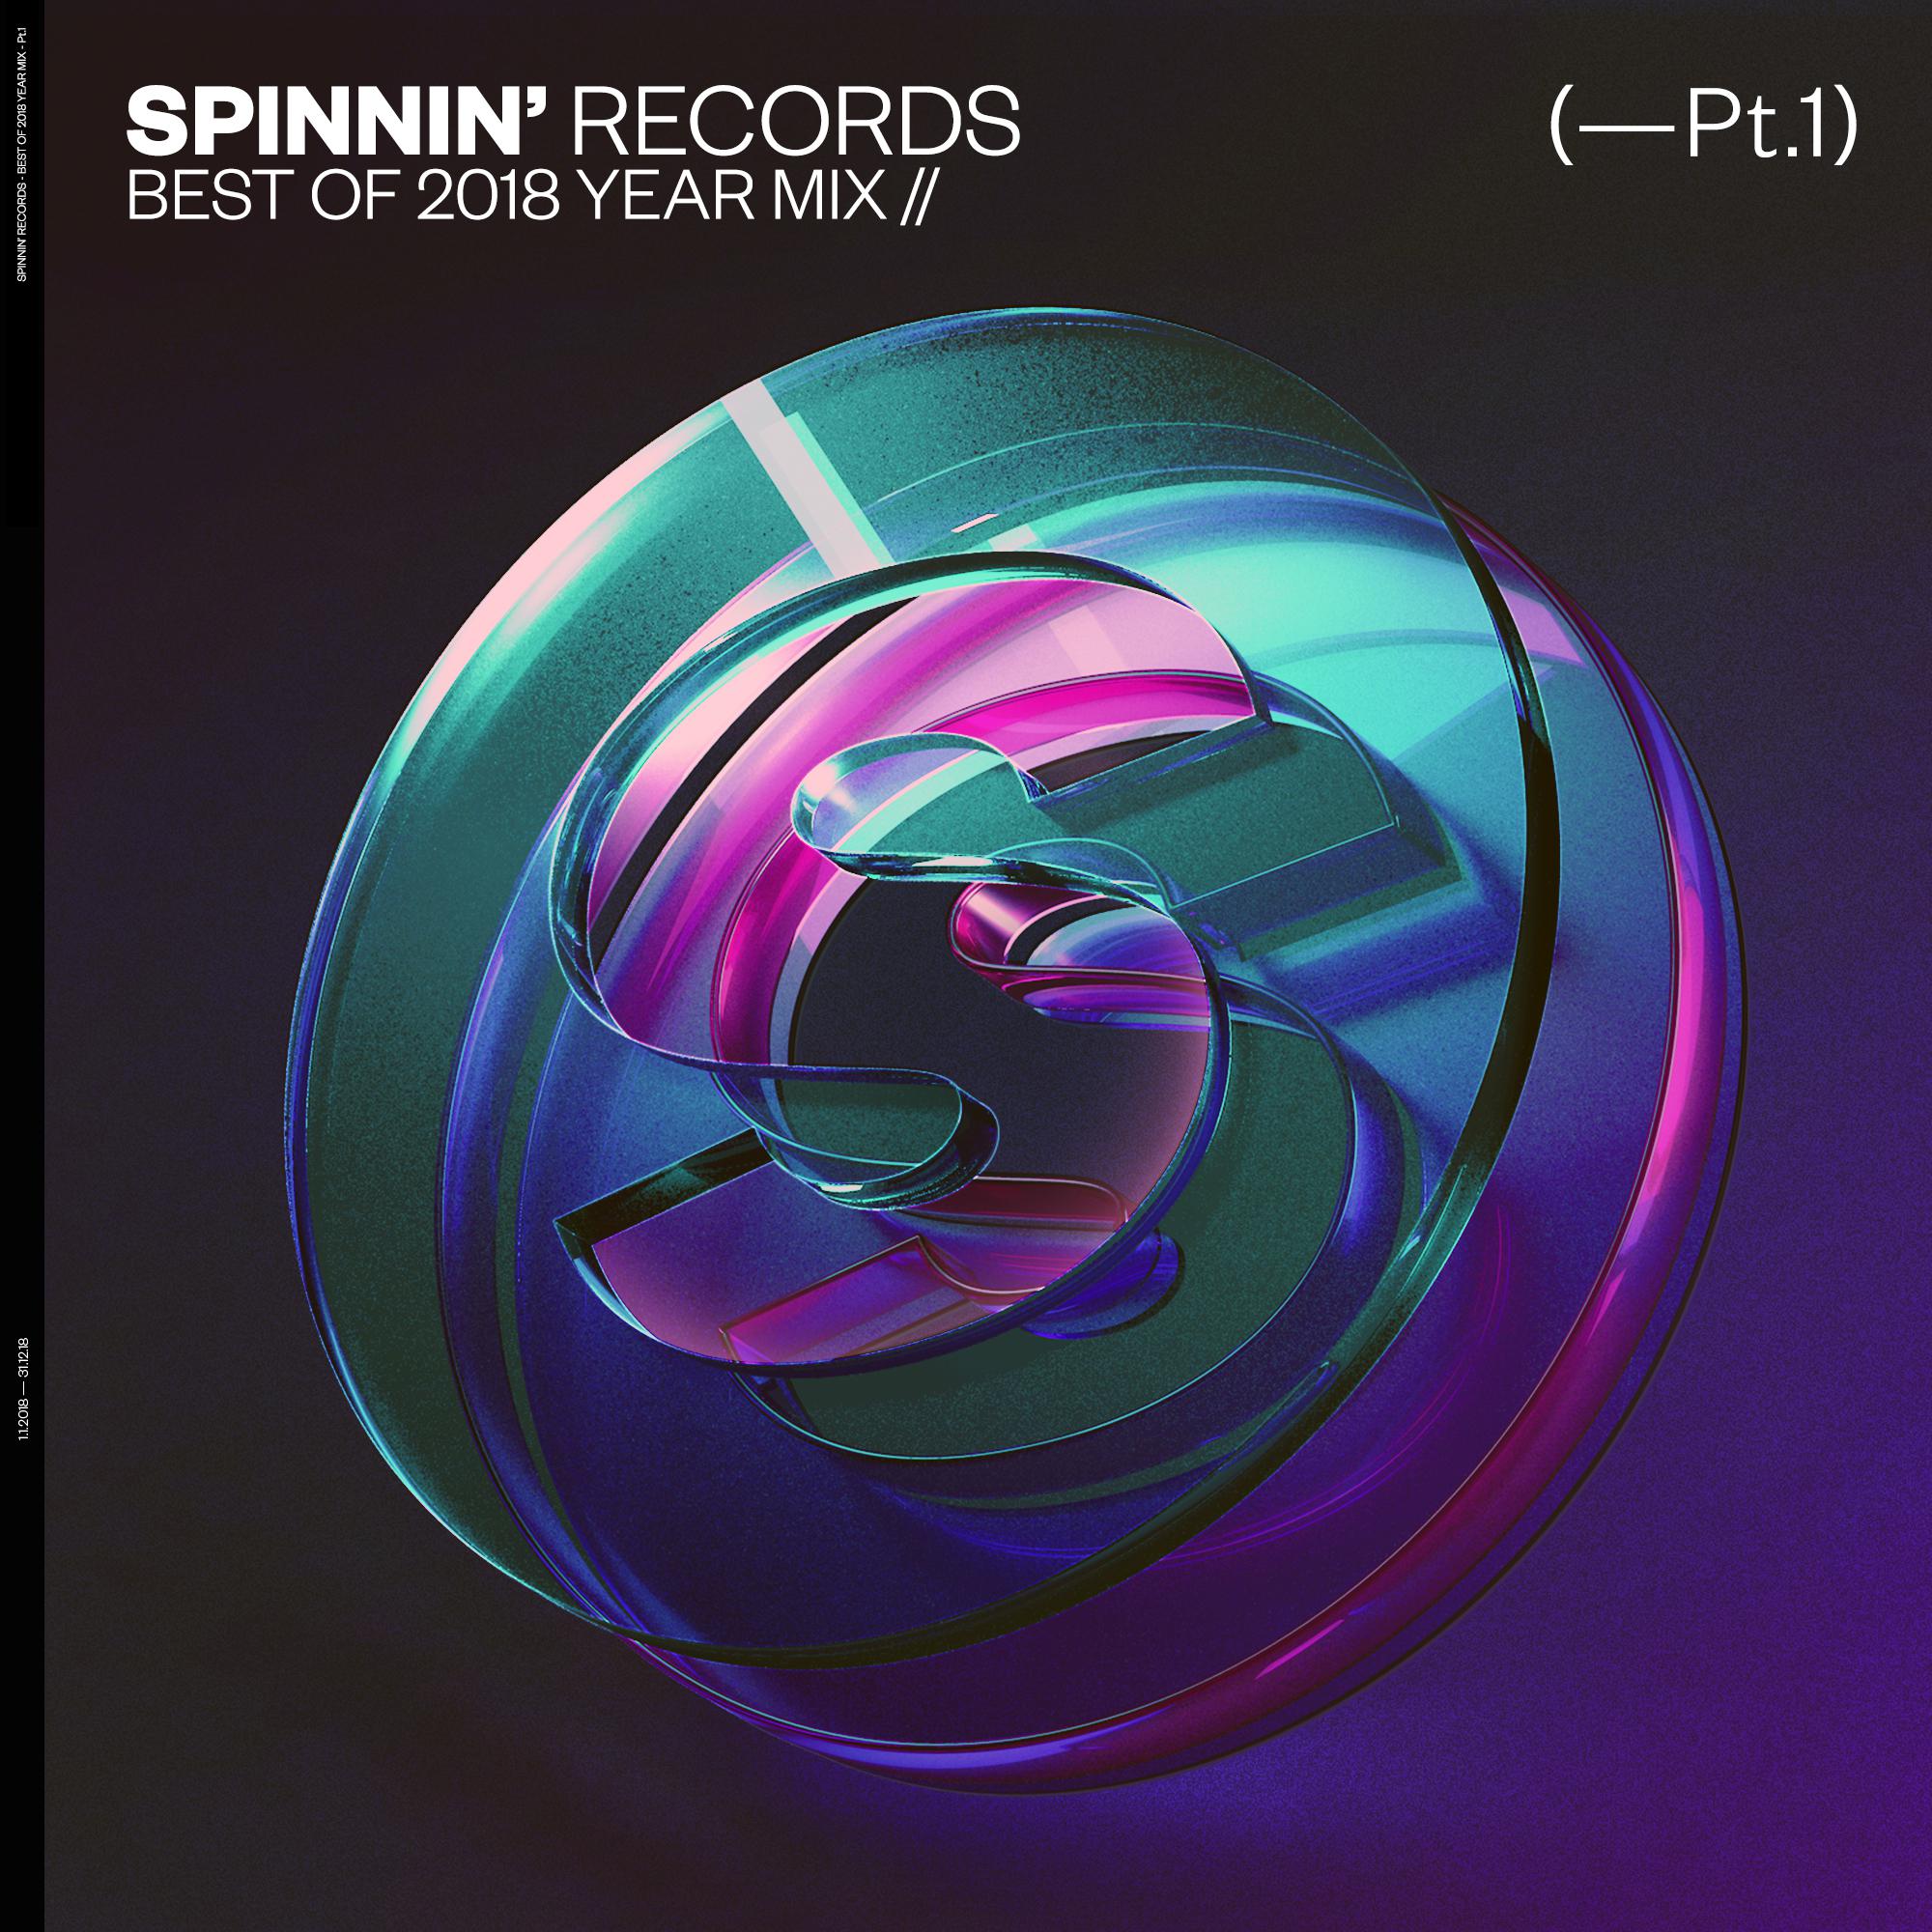 1 - spinnin" records - 专辑 - 网易云音乐